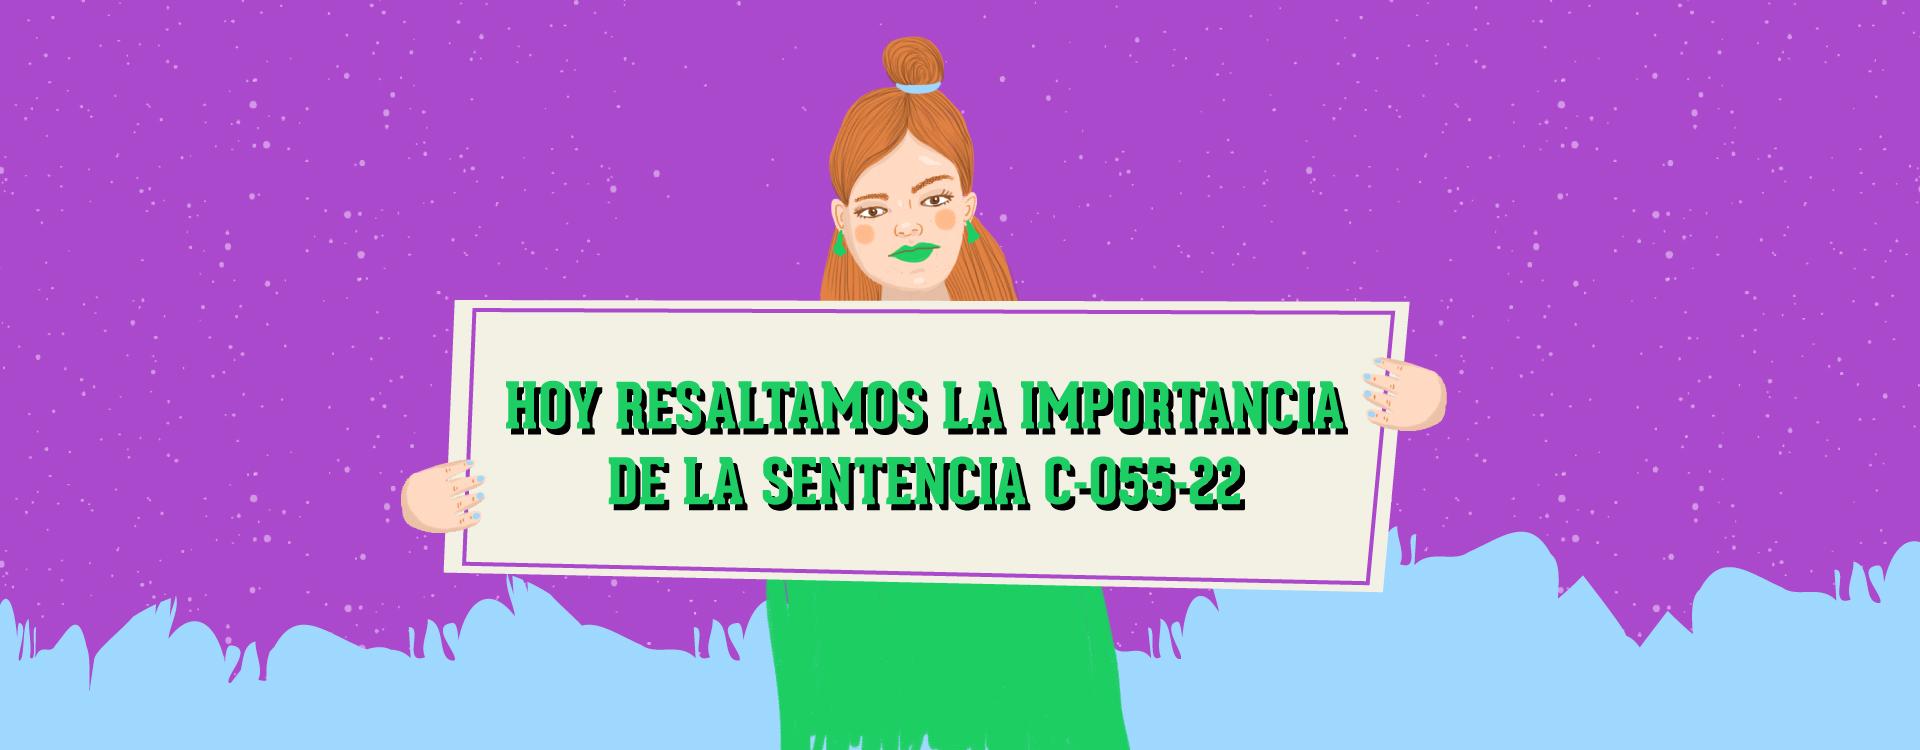 Ilustración con texto de: HOY RESALTAMOS LA IMPORTANCIA DE LA SENTENCIA C-055-22